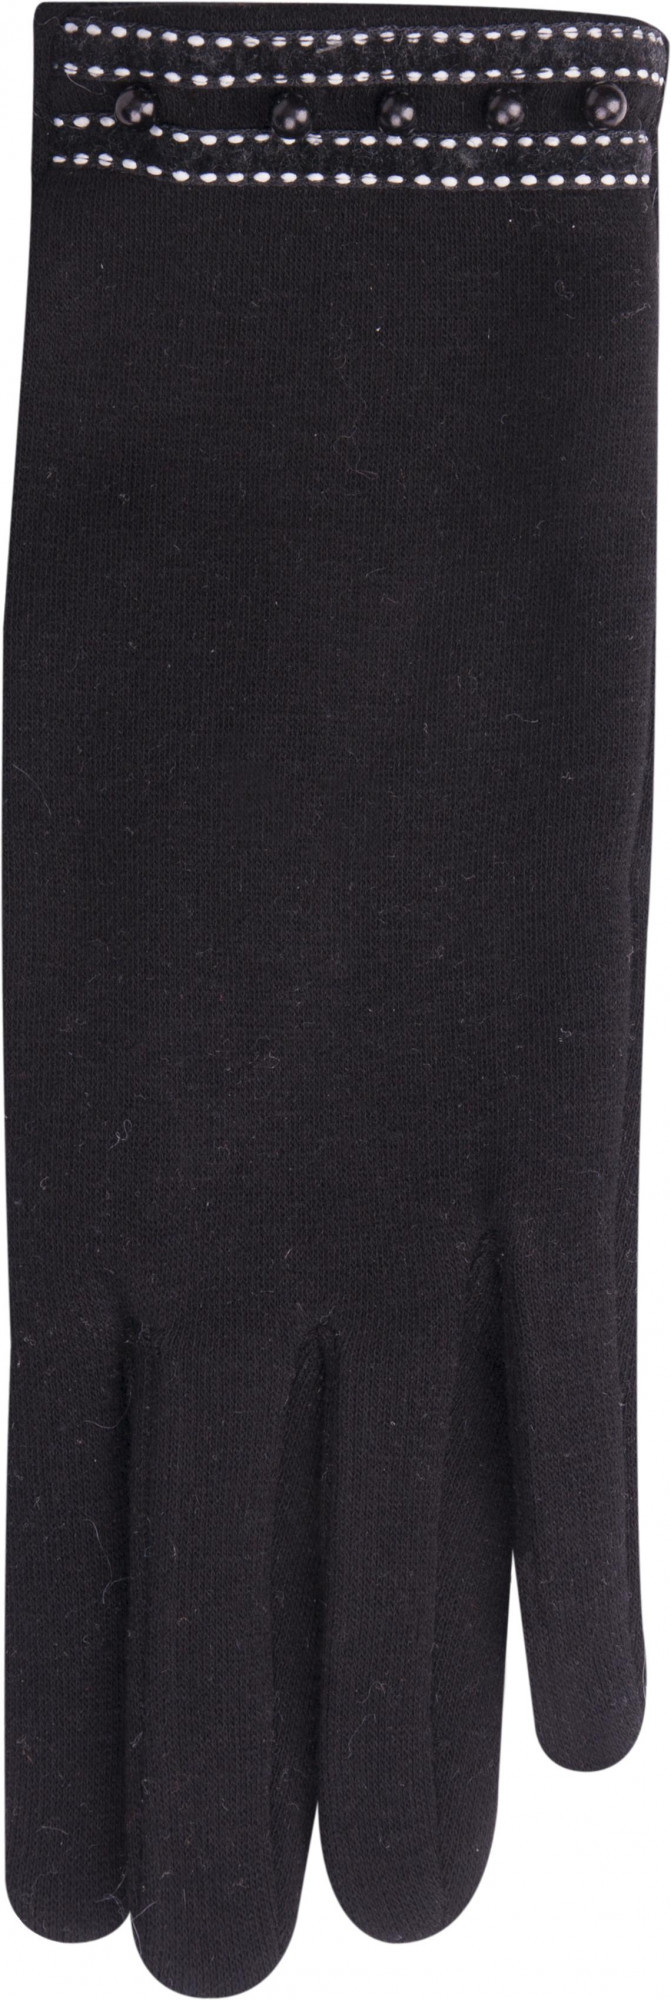 Dámské rukavice model 7951017 černá černá 24 cm - Yoclub